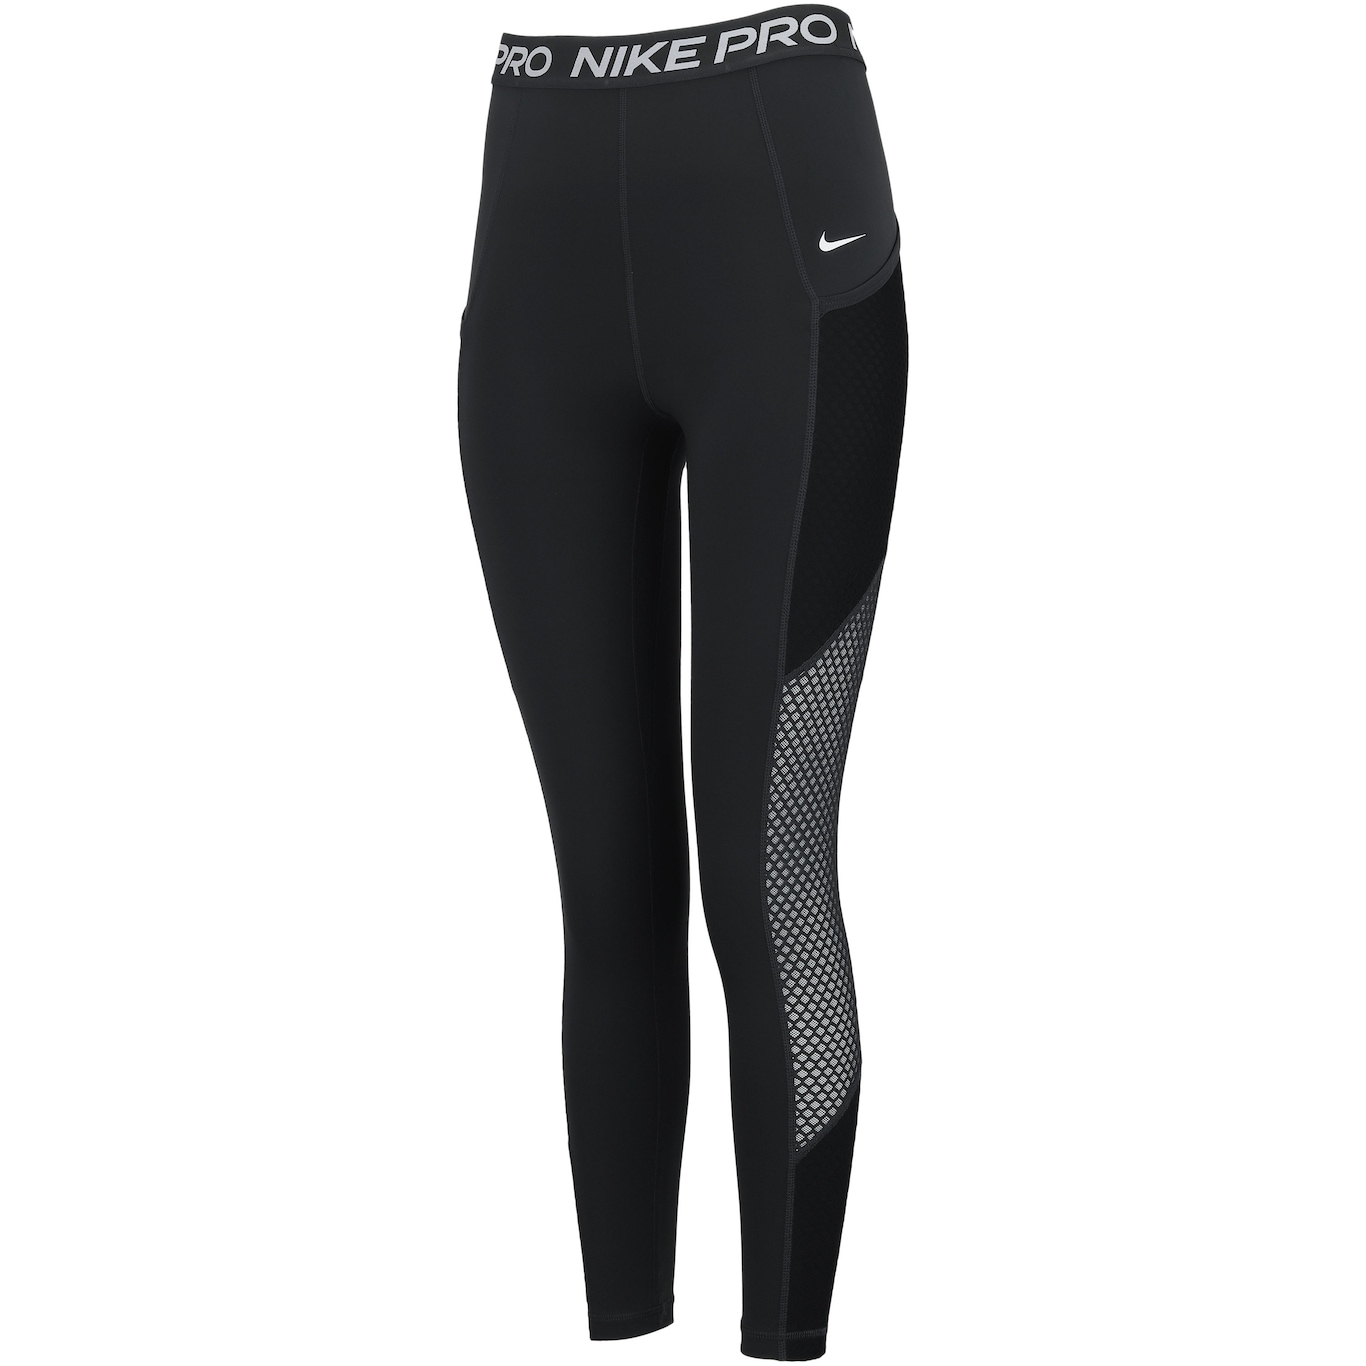 Nike 7/8 tights PRO DRI-FIT in black